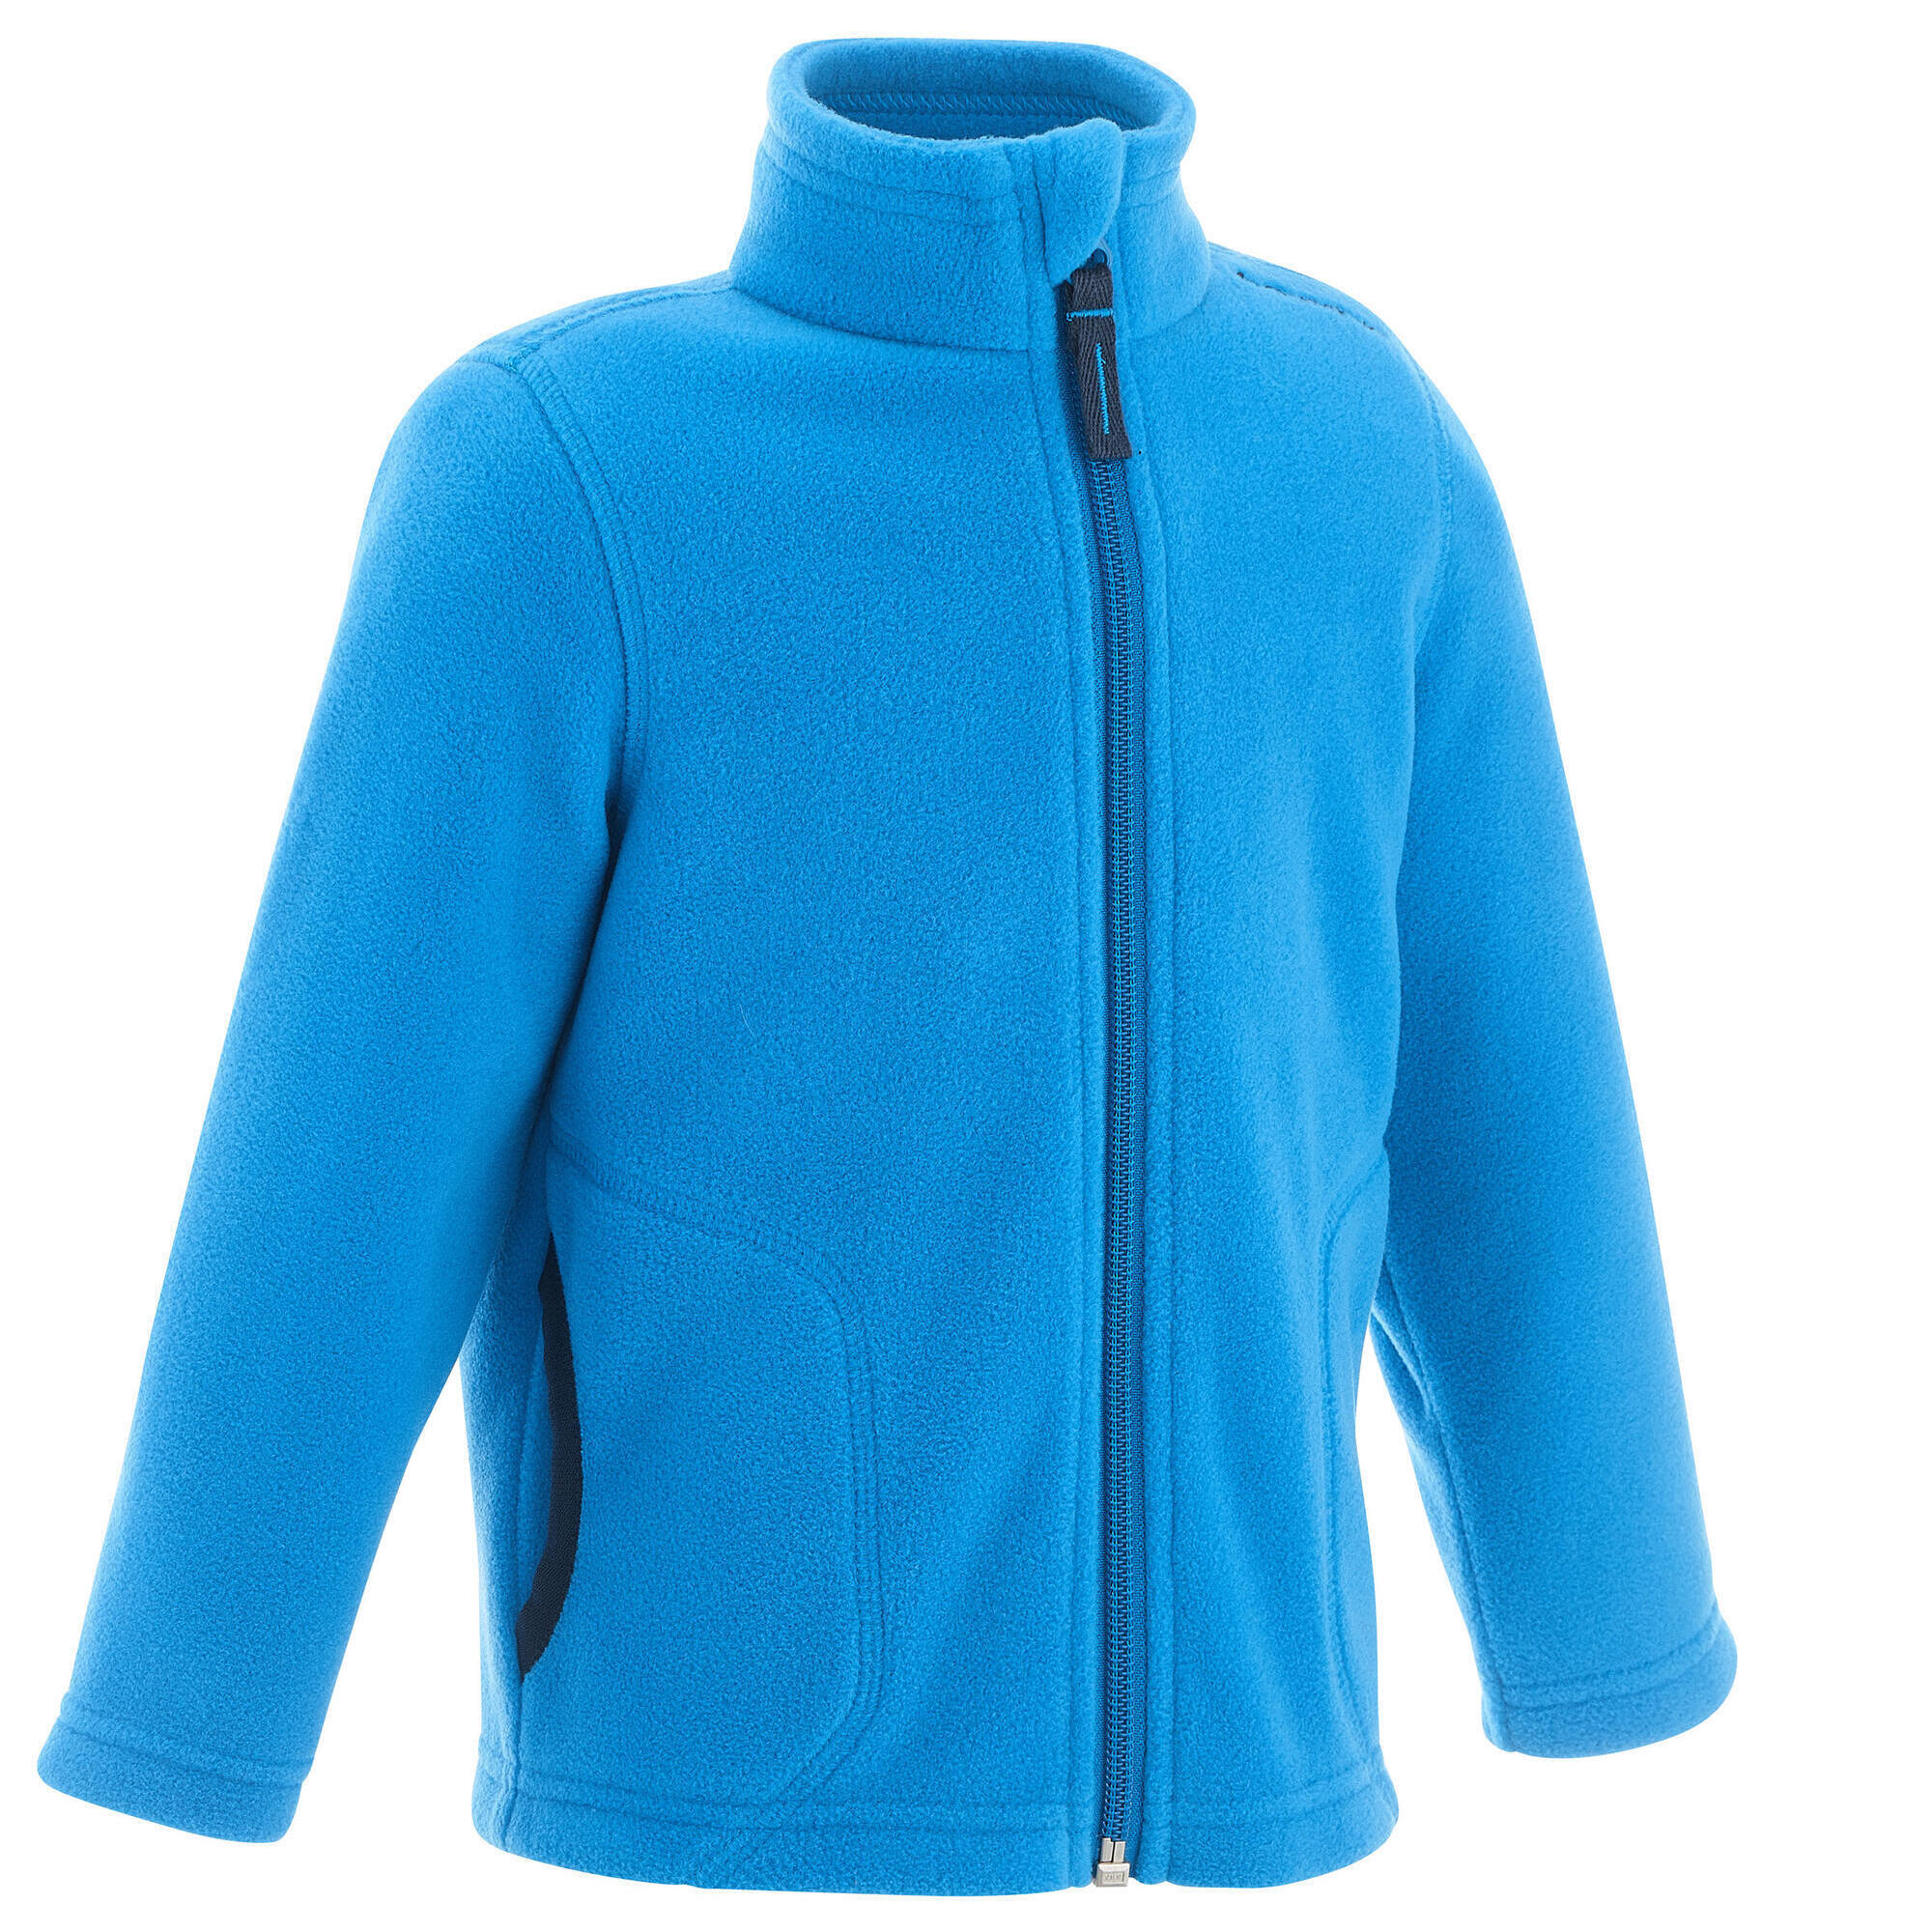 QUECHUA Kids' MH150 blue hiking fleece jacket